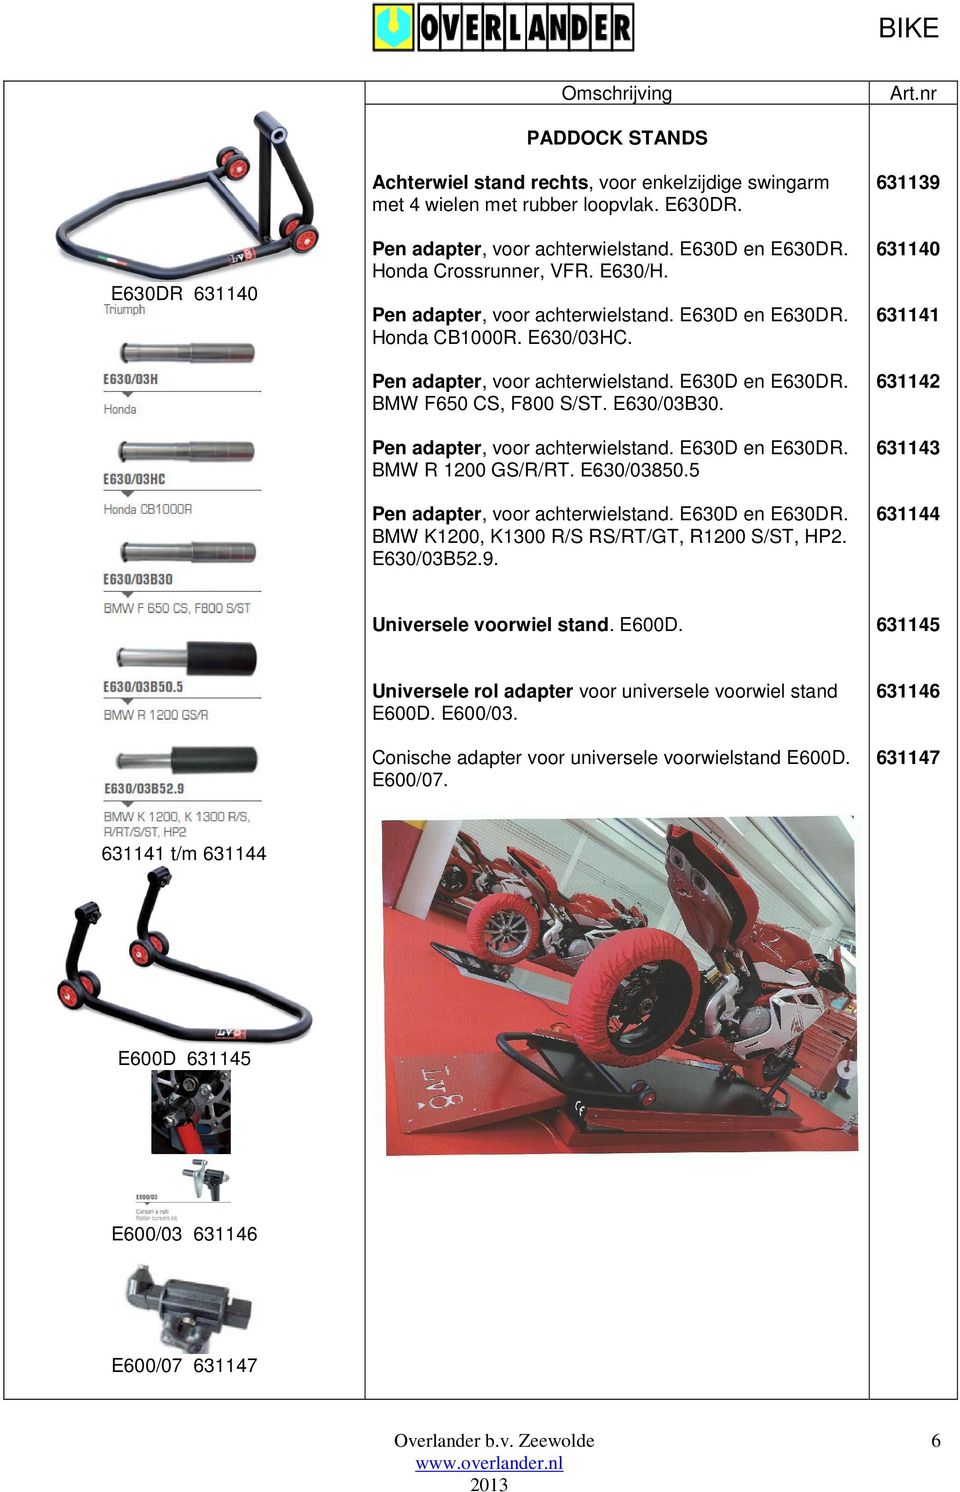 Pen adapter, voor achterwielstand. E630D en E630DR. BMW R 1200 GS/R/RT. E630/03850.5 Pen adapter, voor achterwielstand. E630D en E630DR. BMW K1200, K1300 R/S RS/RT/GT, R1200 S/ST, HP2. E630/03B52.9.